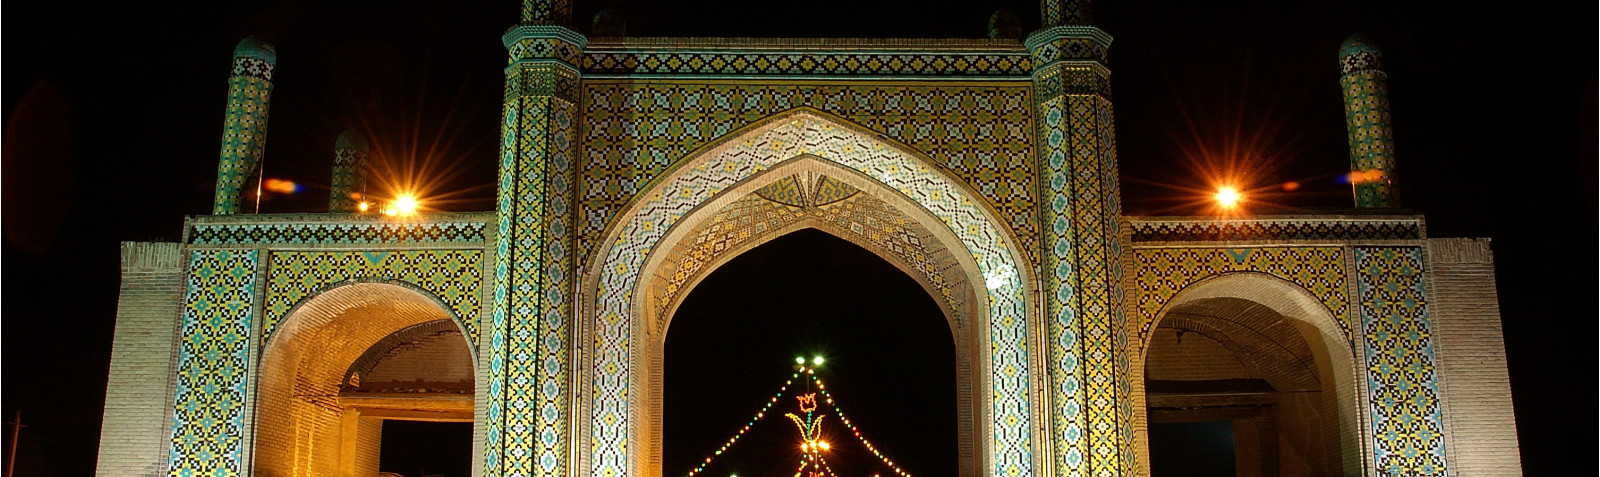 Old Gate of Tehran